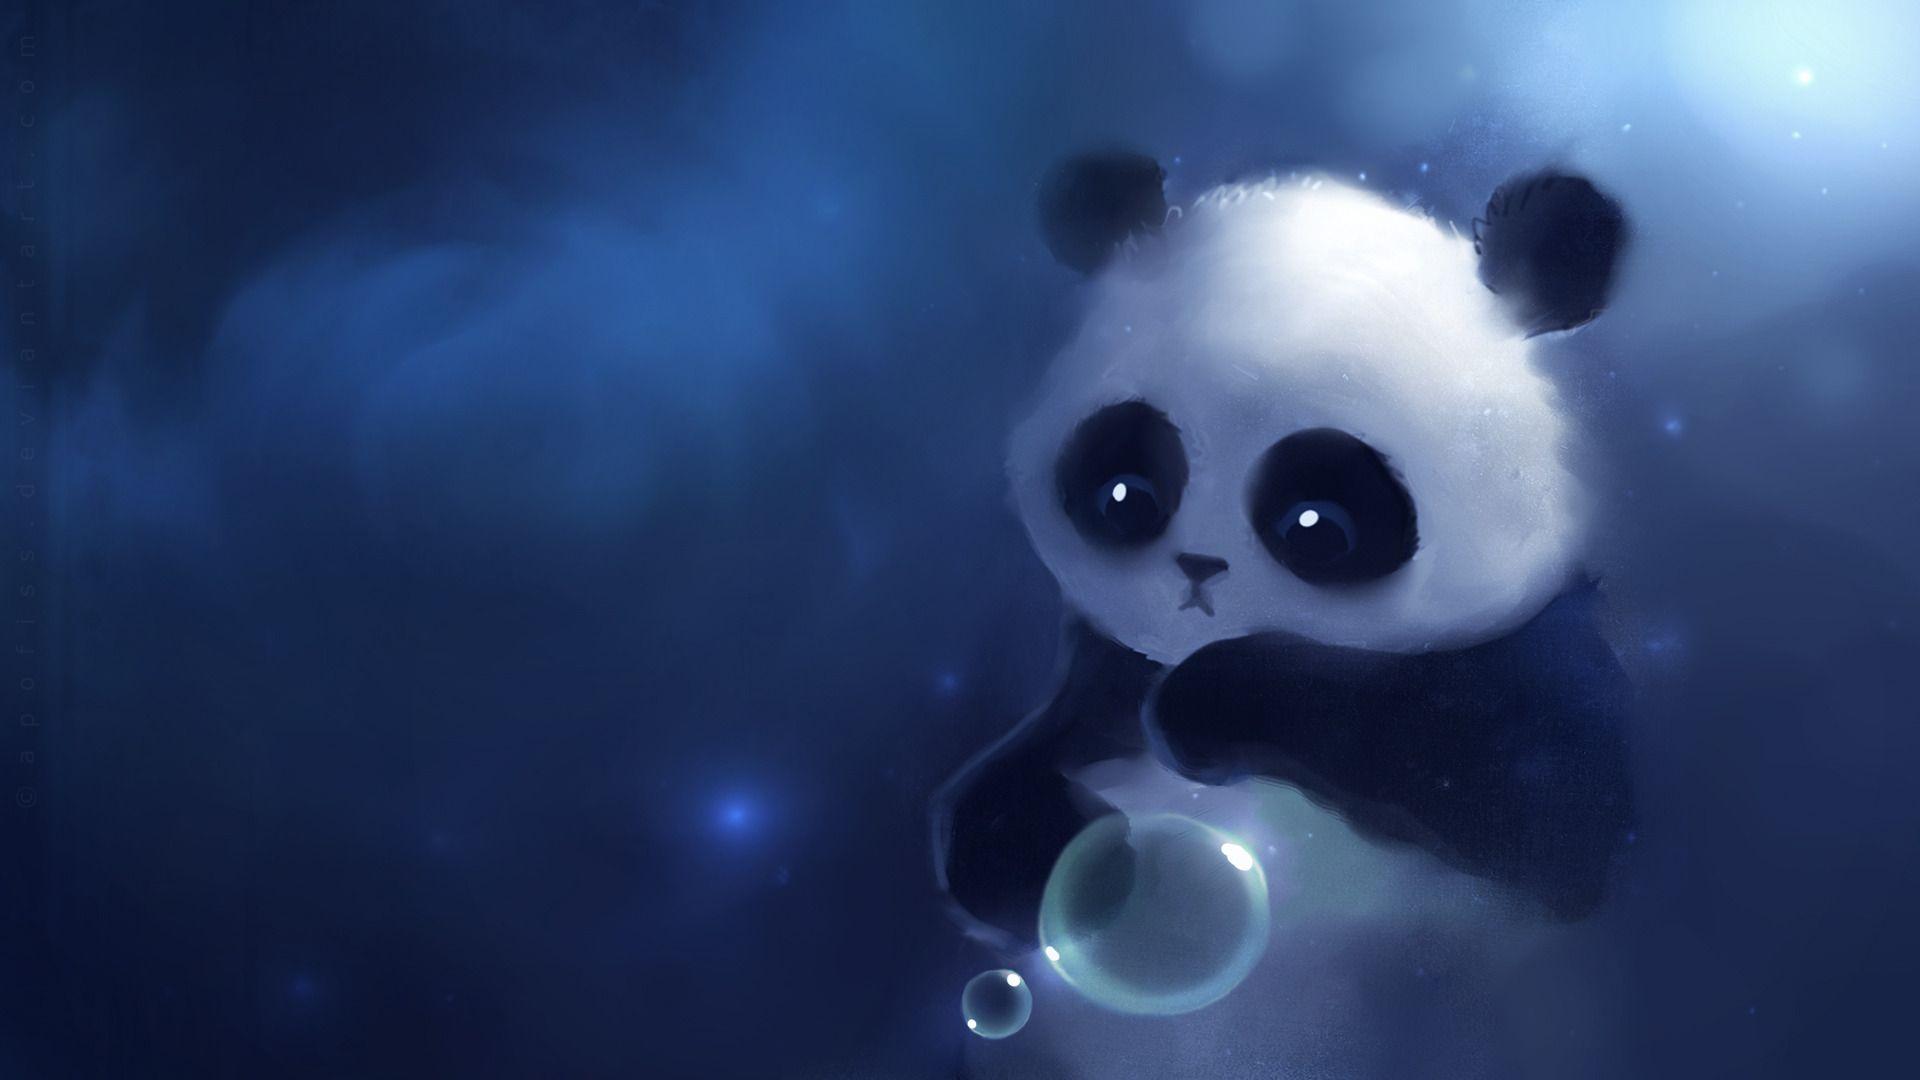 Wallpaper For > Cute Panda Wallpaper For Desktop